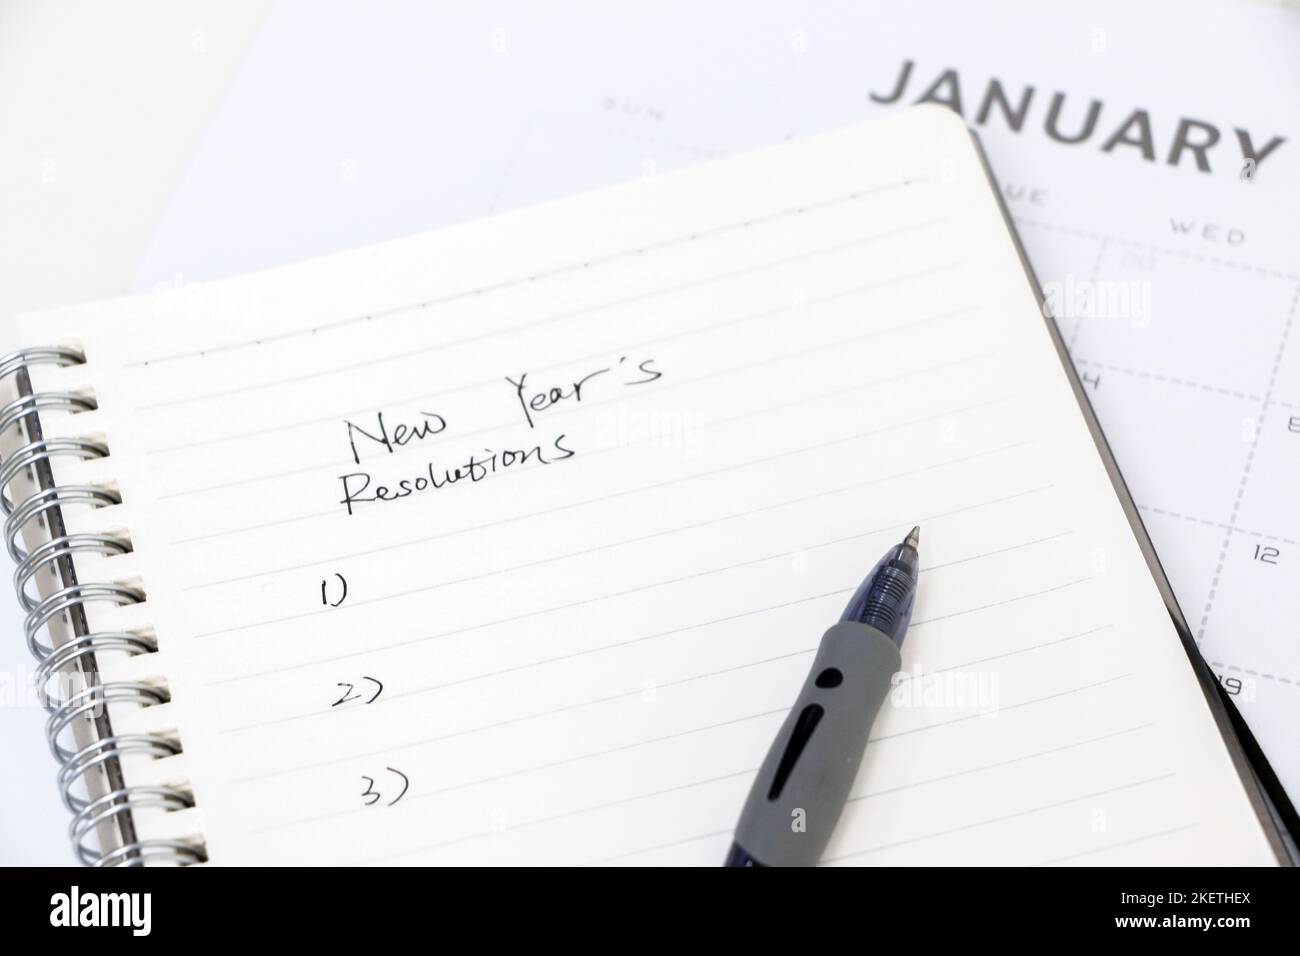 Neujahrsvorsätze schreiben, Notizblock mit Kugelschreiber aufschreiben, Januar-Kalender im Hintergrund, selektiver Fokus. Ziele für das neue Jahr setzen. Stockfoto